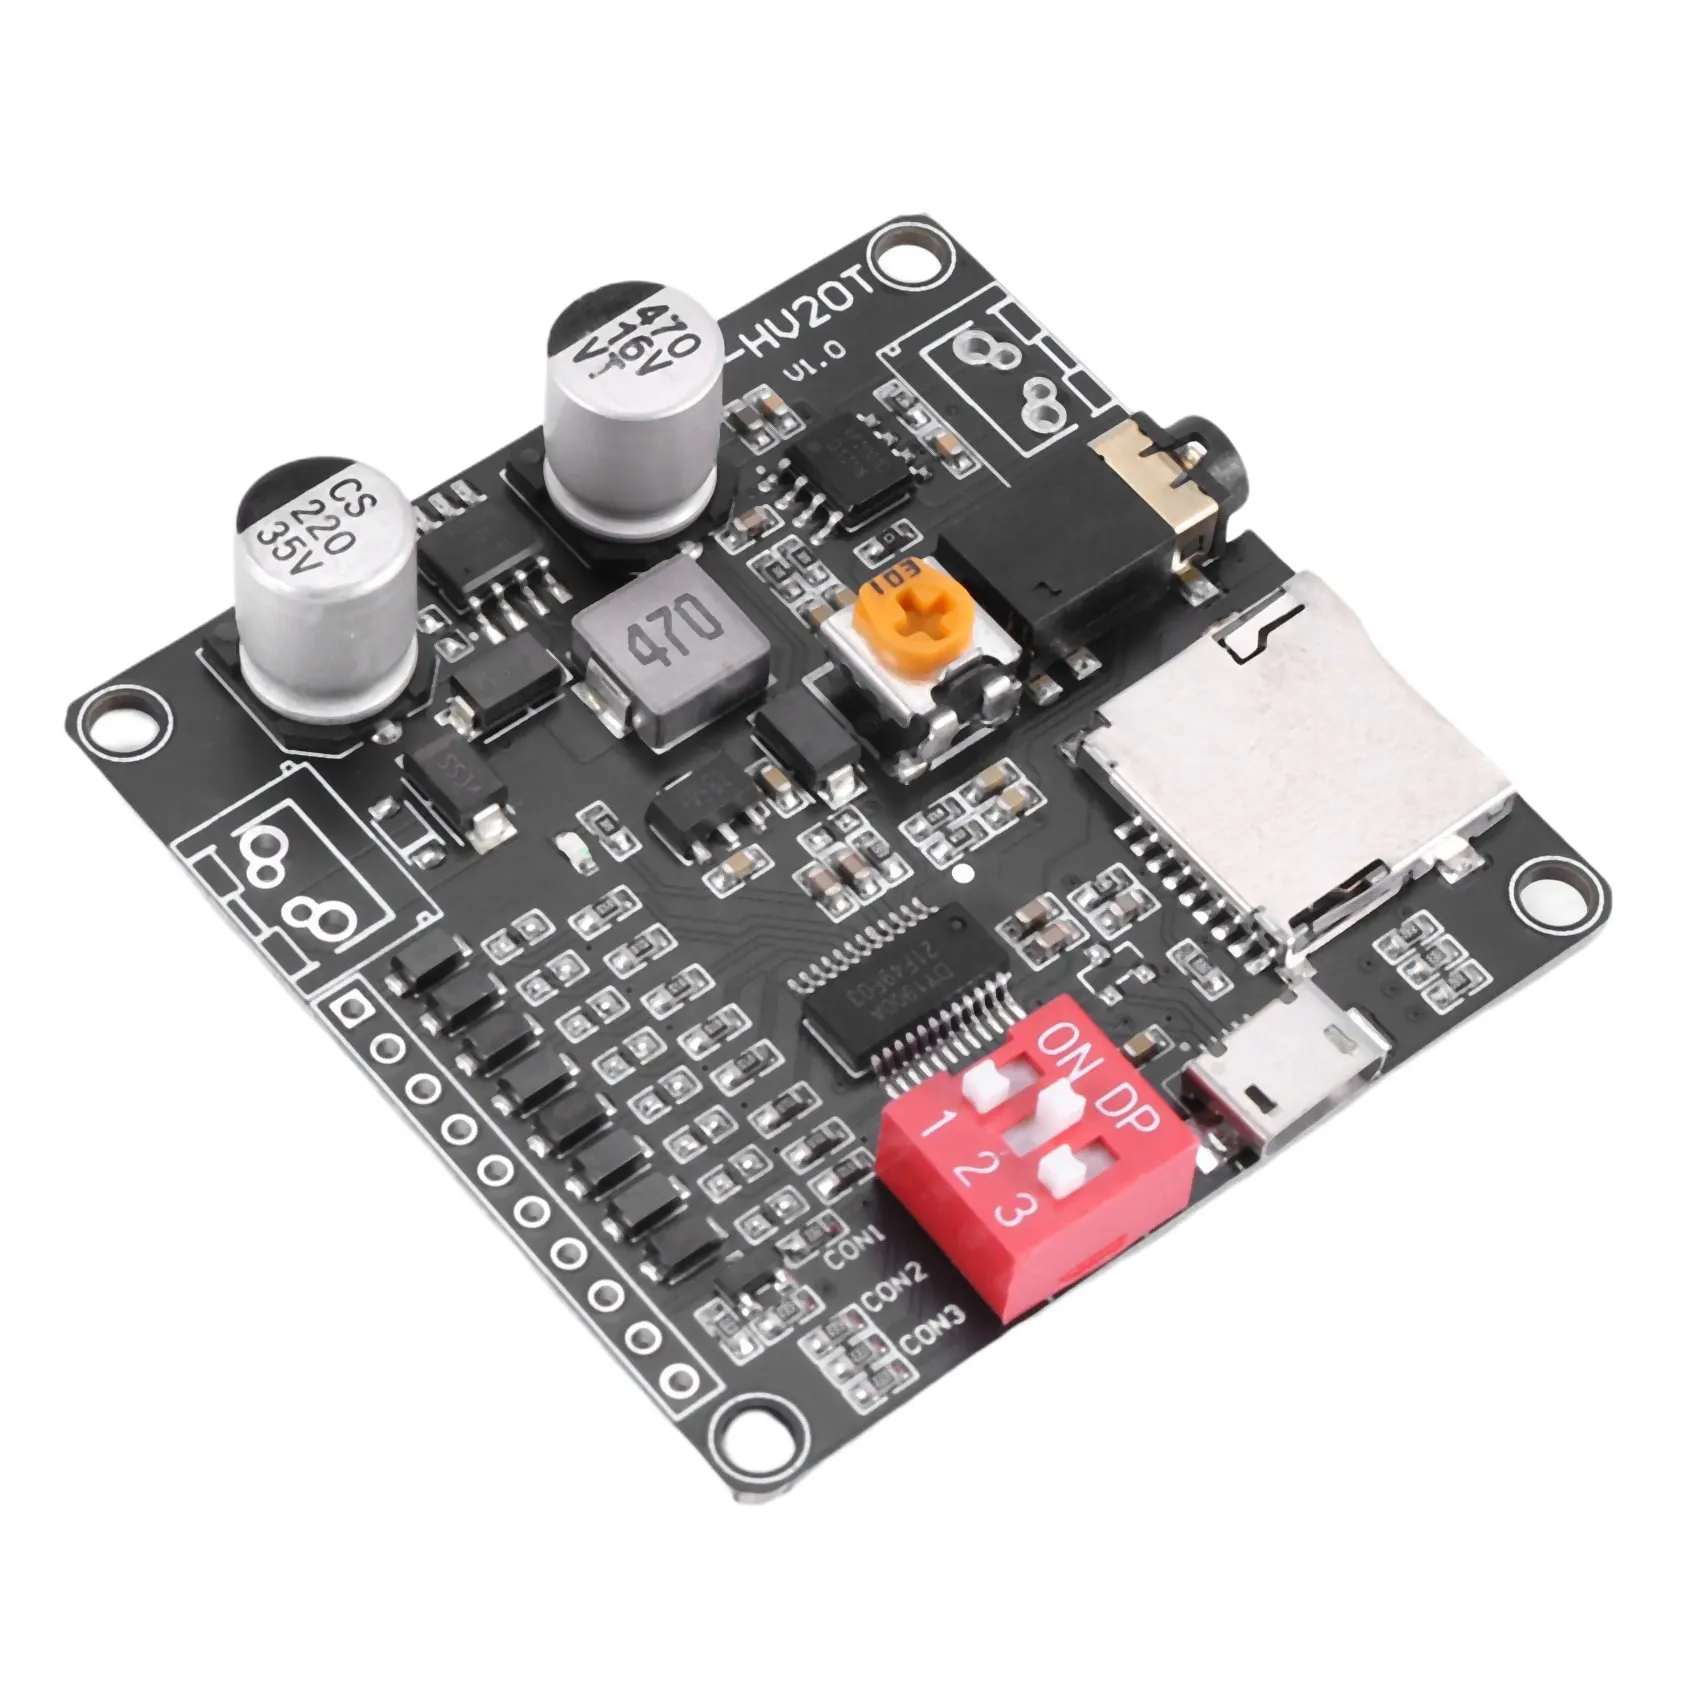 

DY-HV20T 12 В/24 В источник питания 10 Вт/20 Вт модуль воспроизведения голоса с поддержкой Micro-SD карты MP3 музыкальный плеер для Arduino